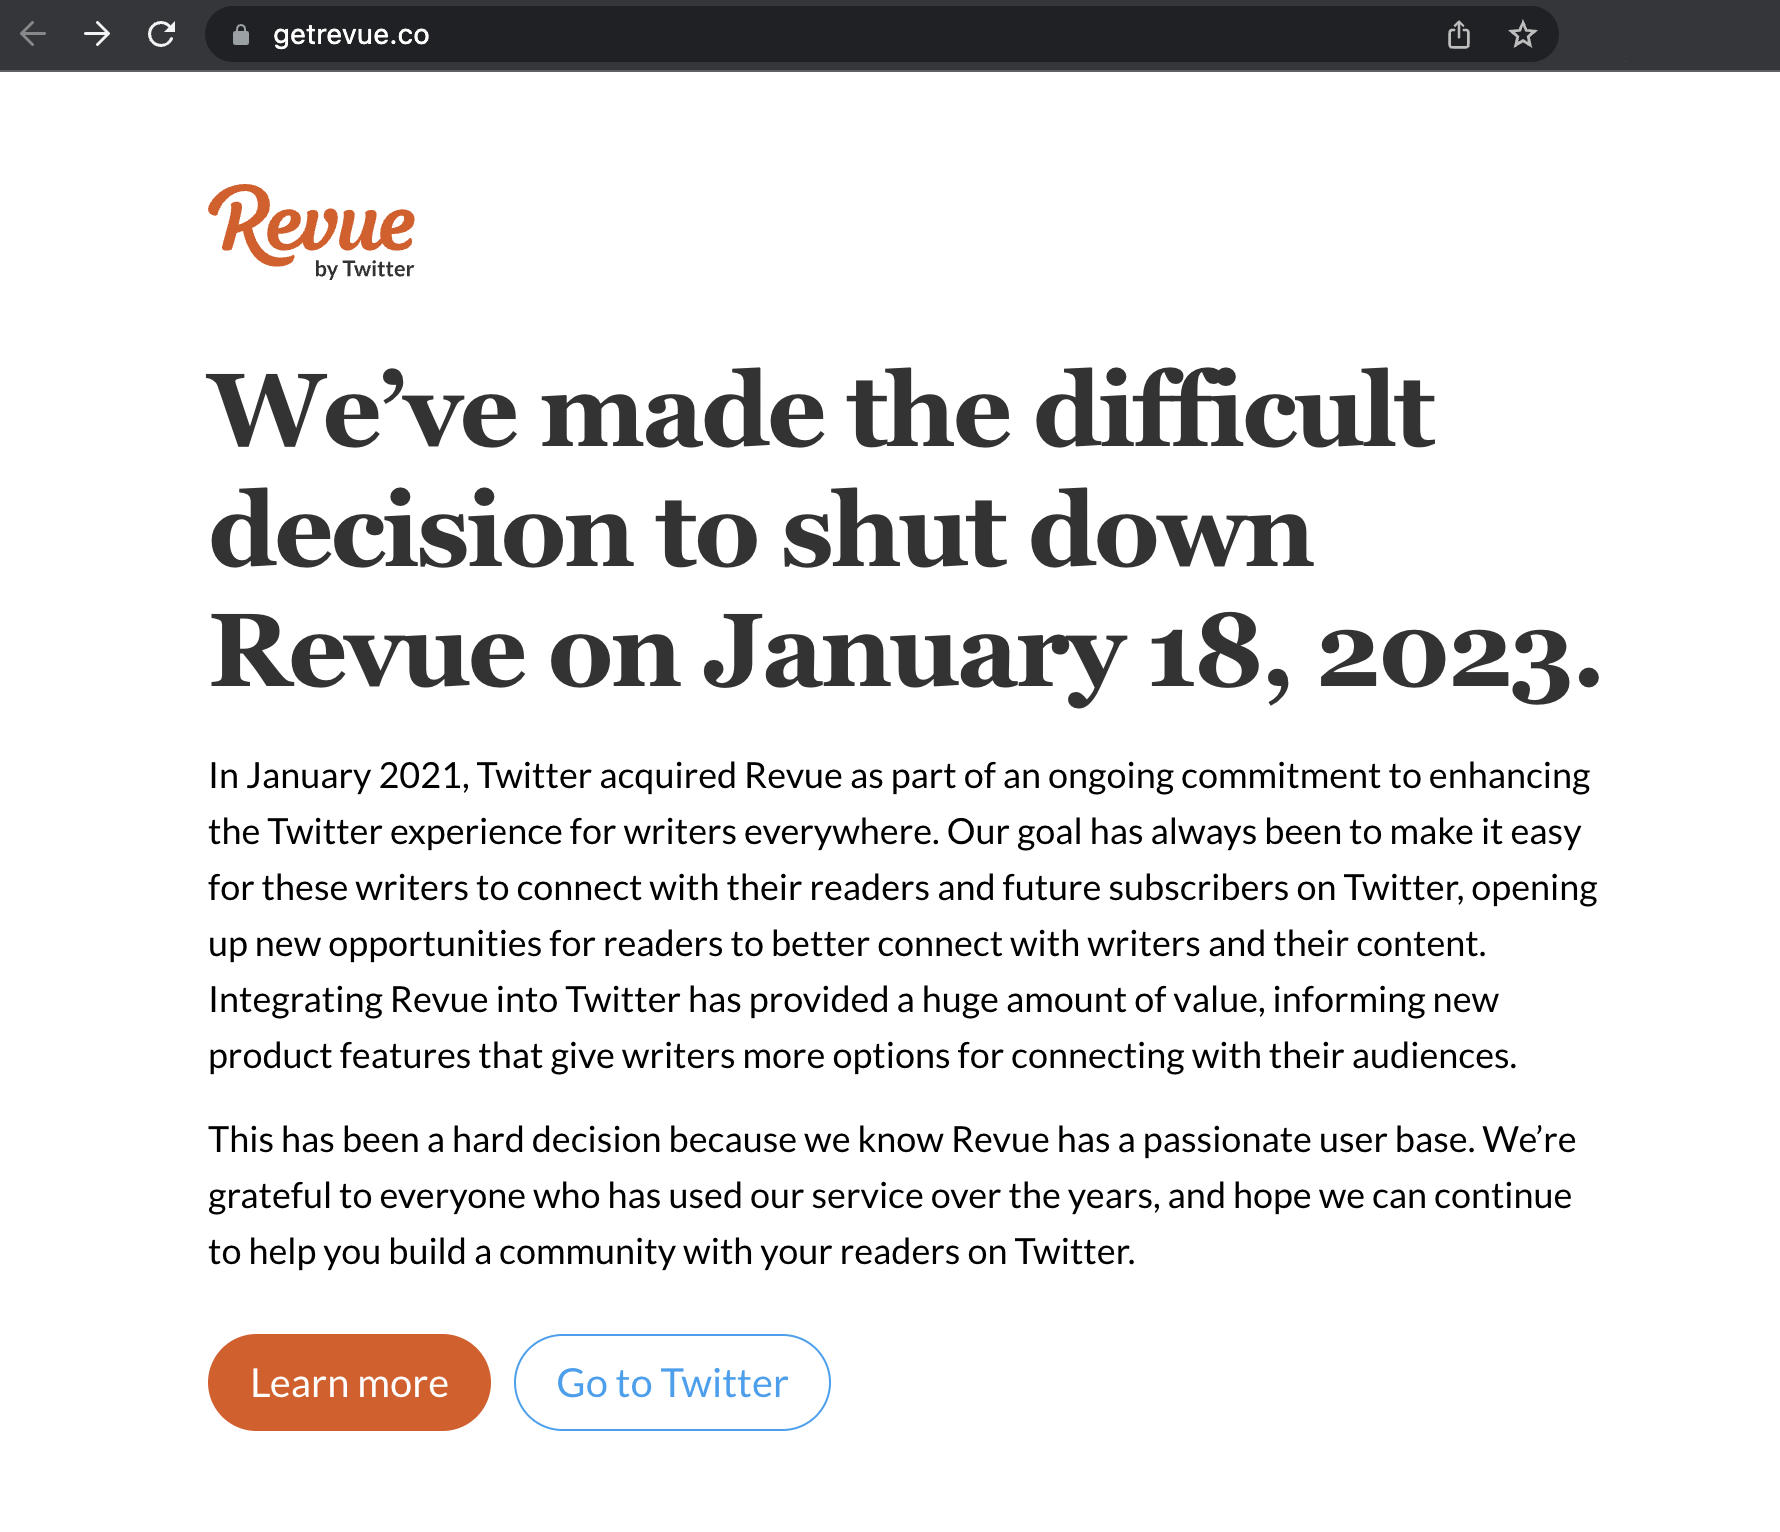 Aviso de encerramento das operações da plataforma Revue do Twitter